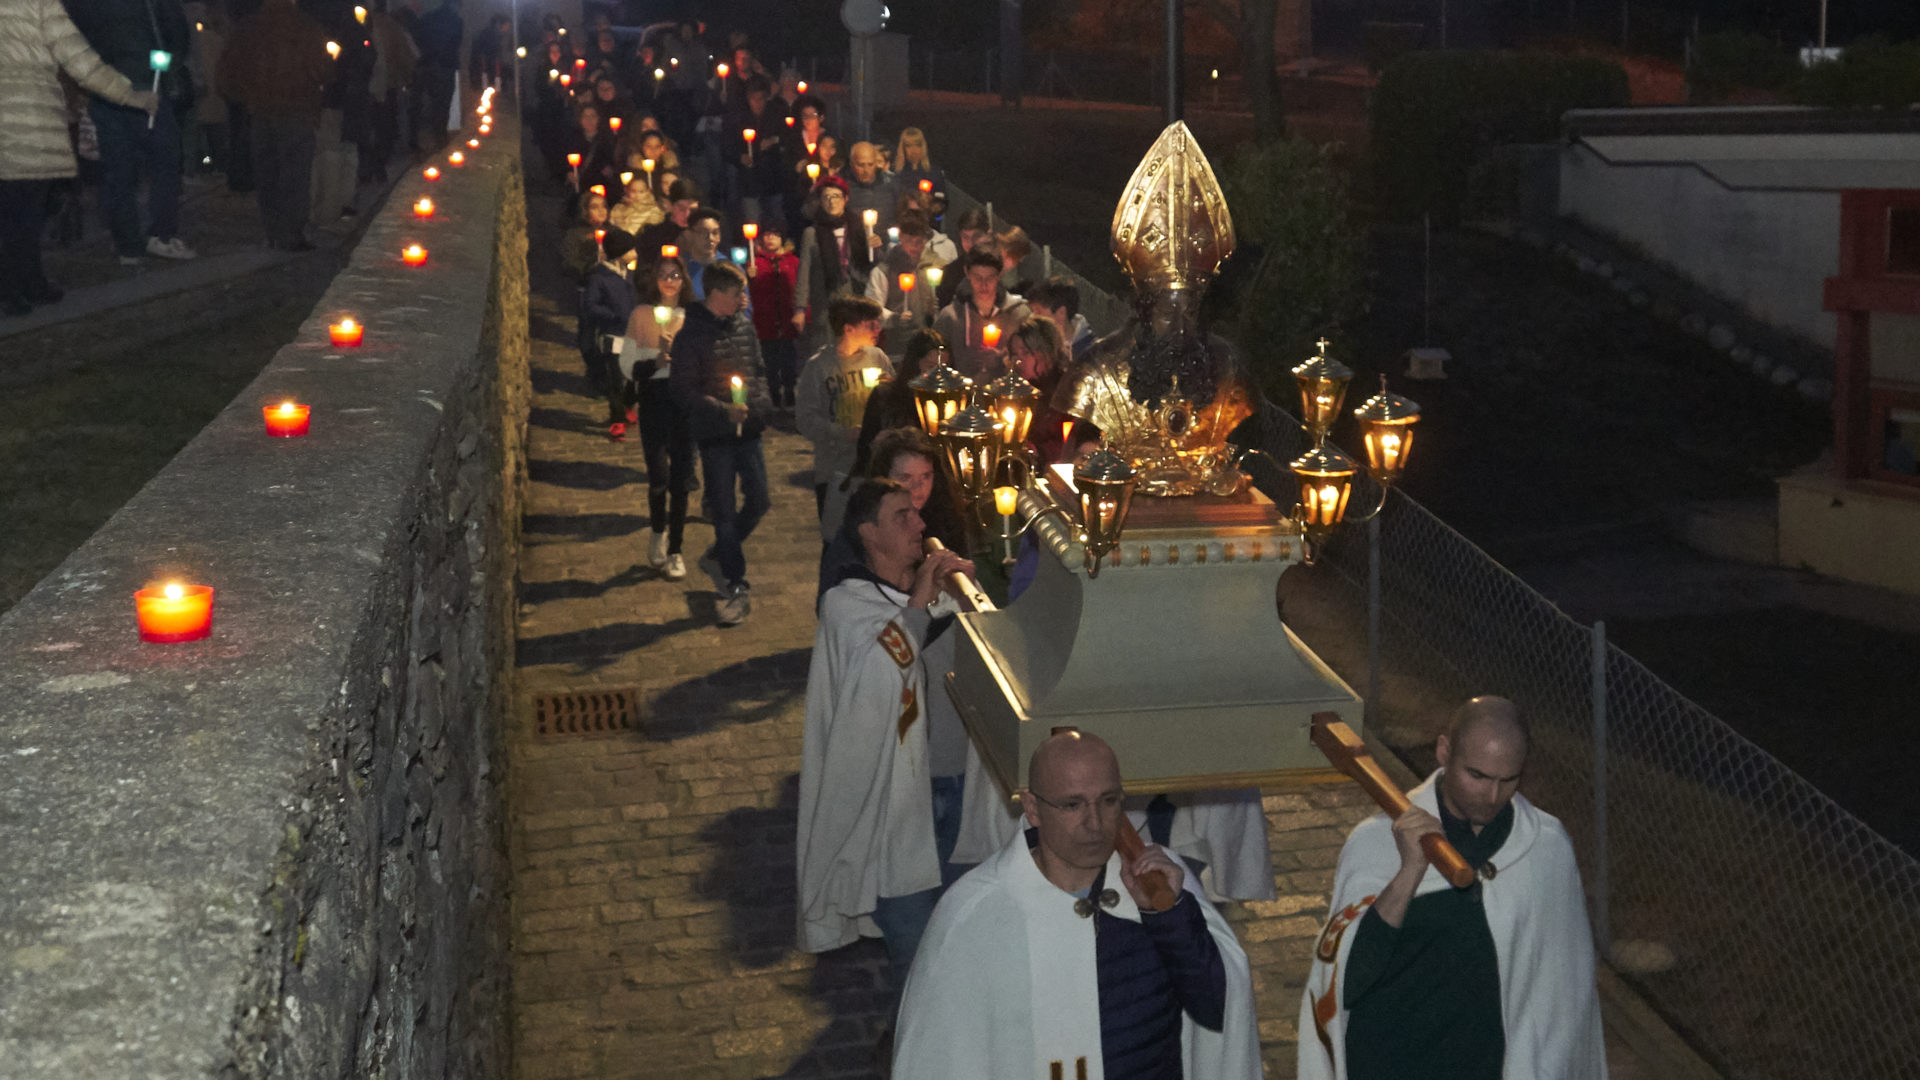 La processione di San Provino di sabato 9 marzo 2019 (foto catt.ch)